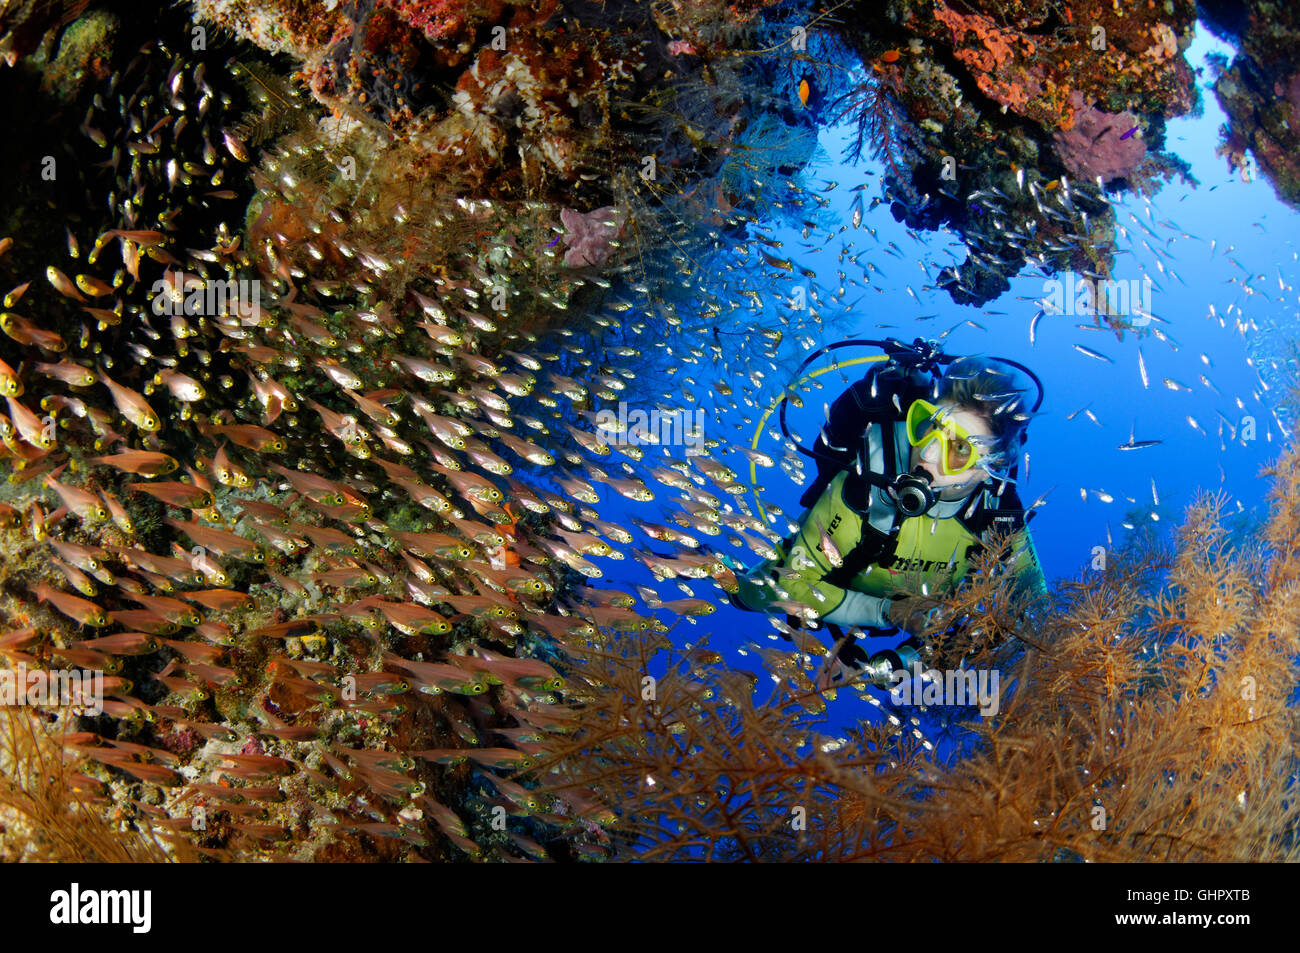 Parapriacanthus ransonneti, secca di pigmea spazzatrice e scuba diver, Abu Fandera, Mar Rosso, Egitto, Africa Foto Stock